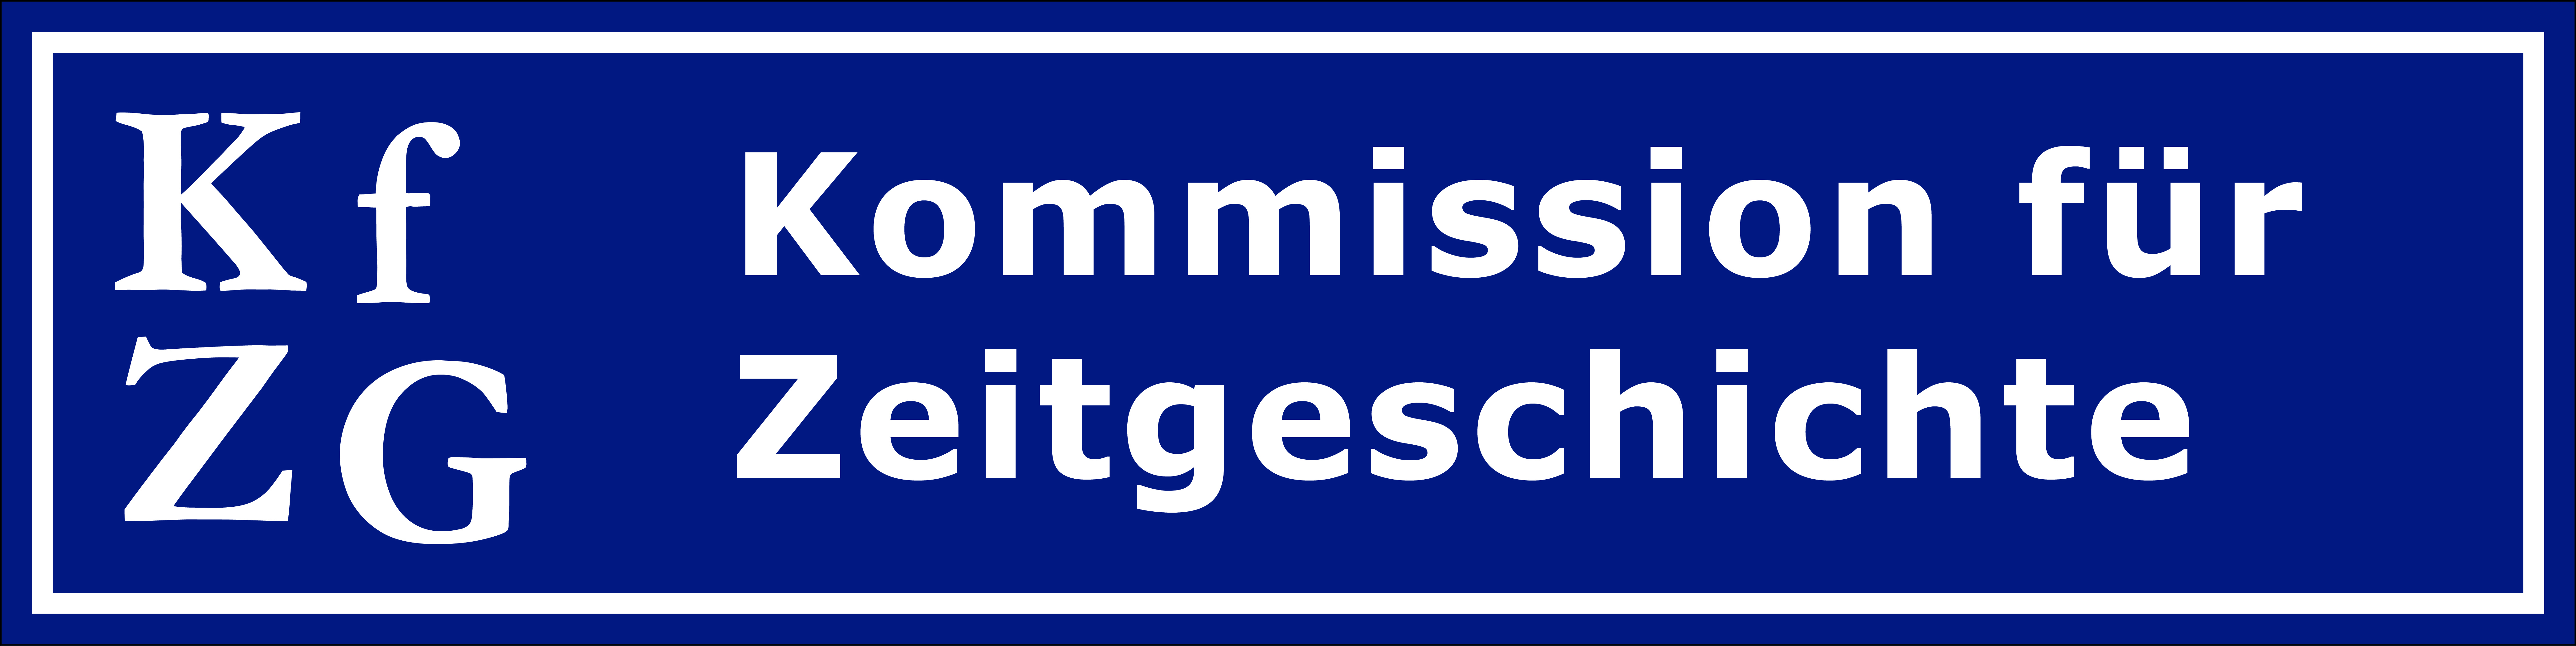 kfzg-logo-kommission-fuer-zeitgeschichte.jpg